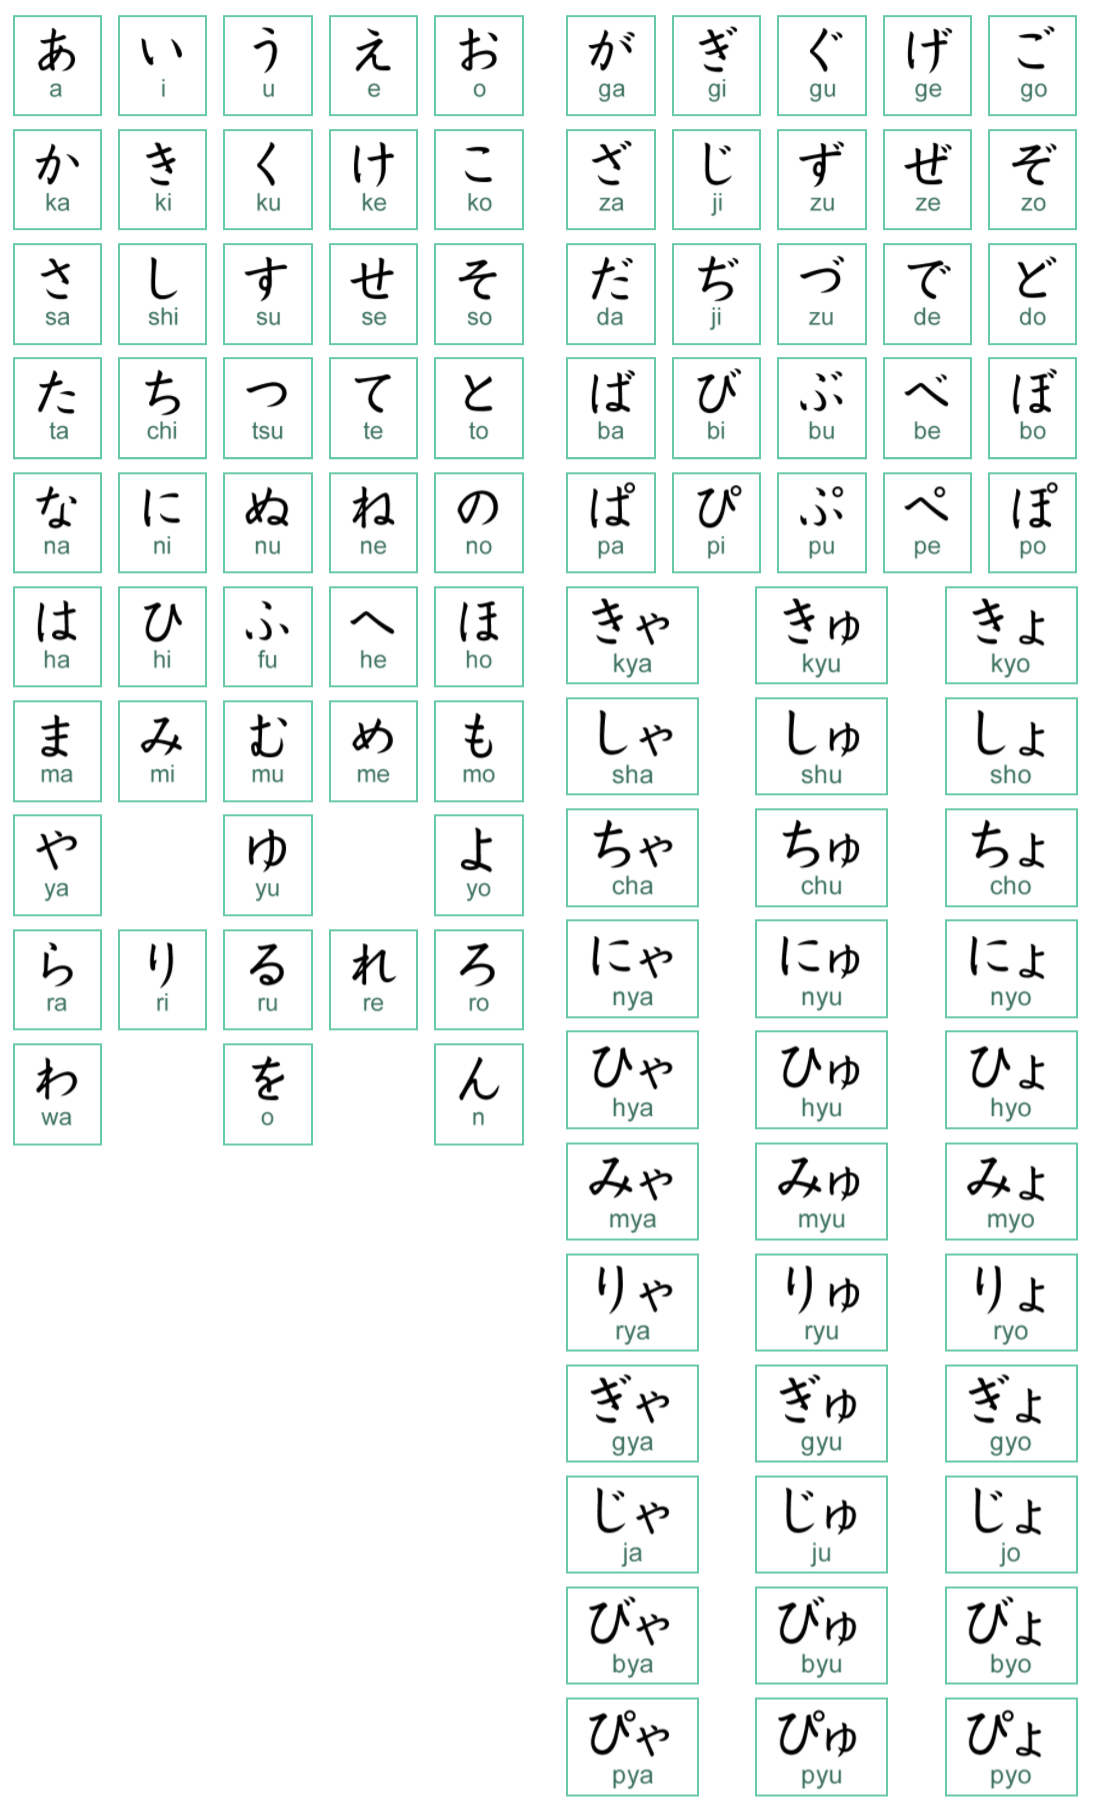 Bảng chữ cái Katakana tiếng Nhật đơn giản đẹp